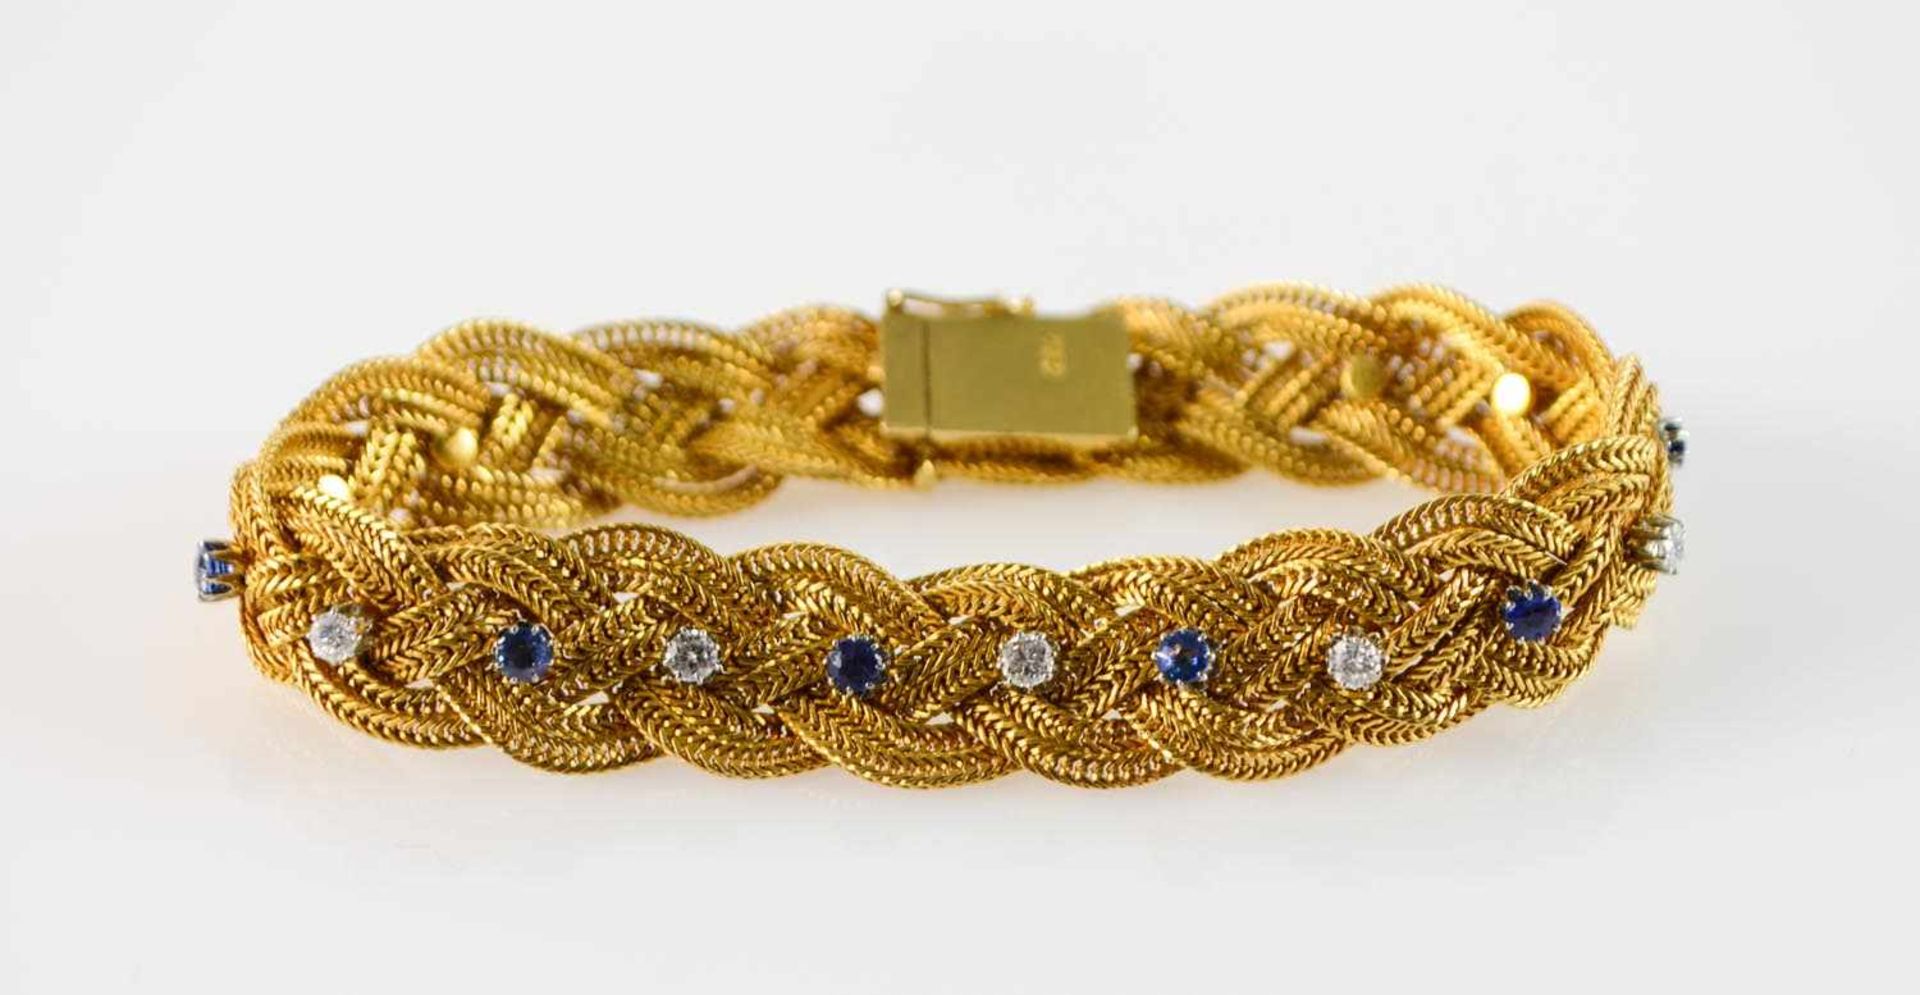 Damenarmband750 Gelbgold, aus 2 Strängen geflochtenes Armband besetzt mit 8 Saphiren und 7